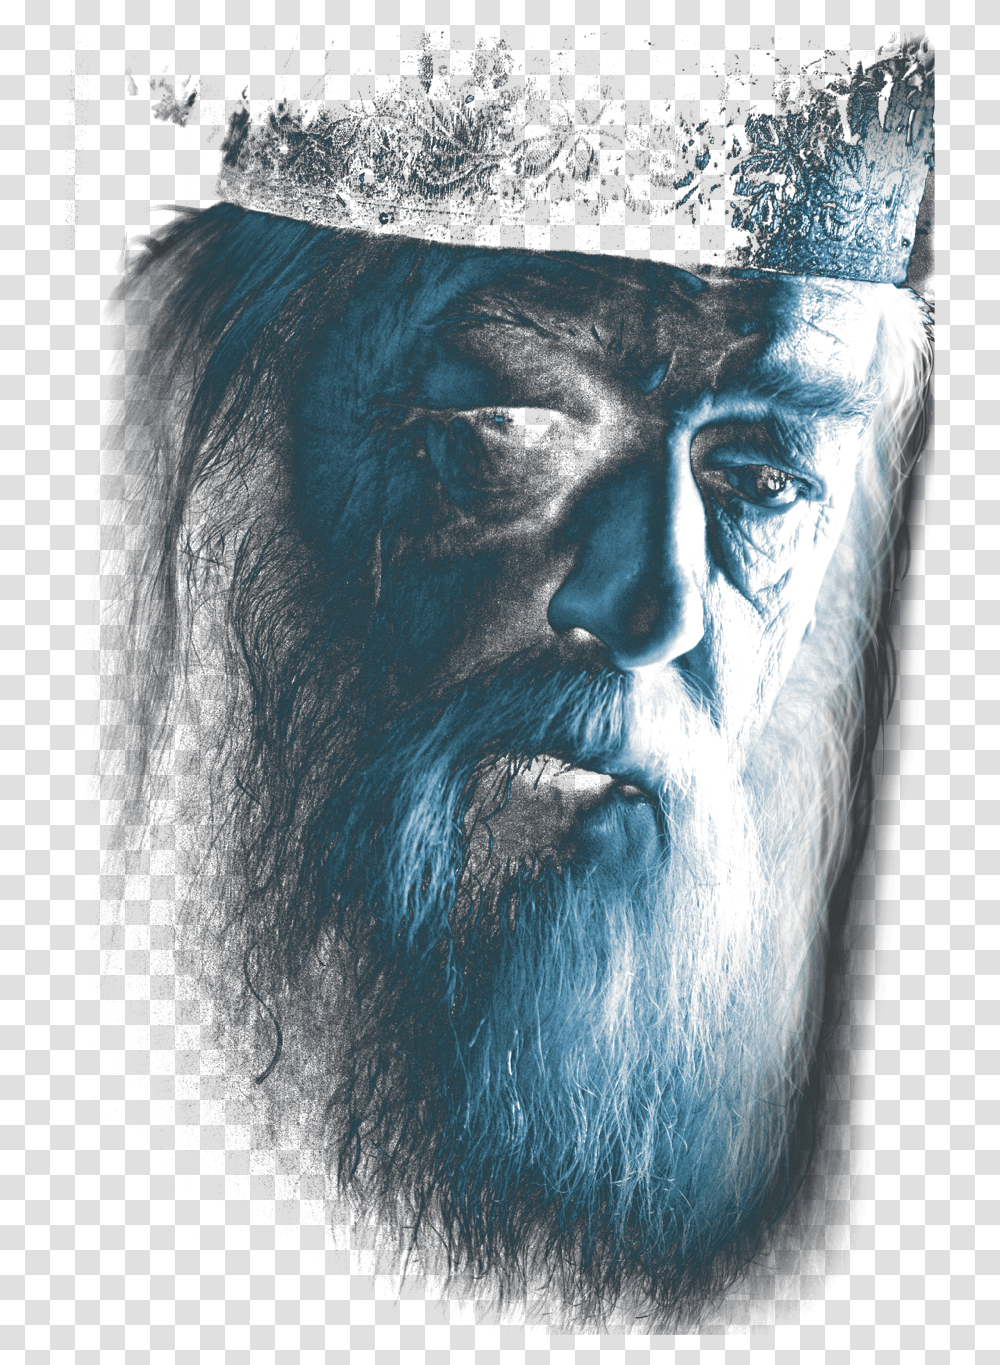 Harry Potter Dumbledore Face Albus Dumbledore, Beard, Portrait, Photography, Painting Transparent Png